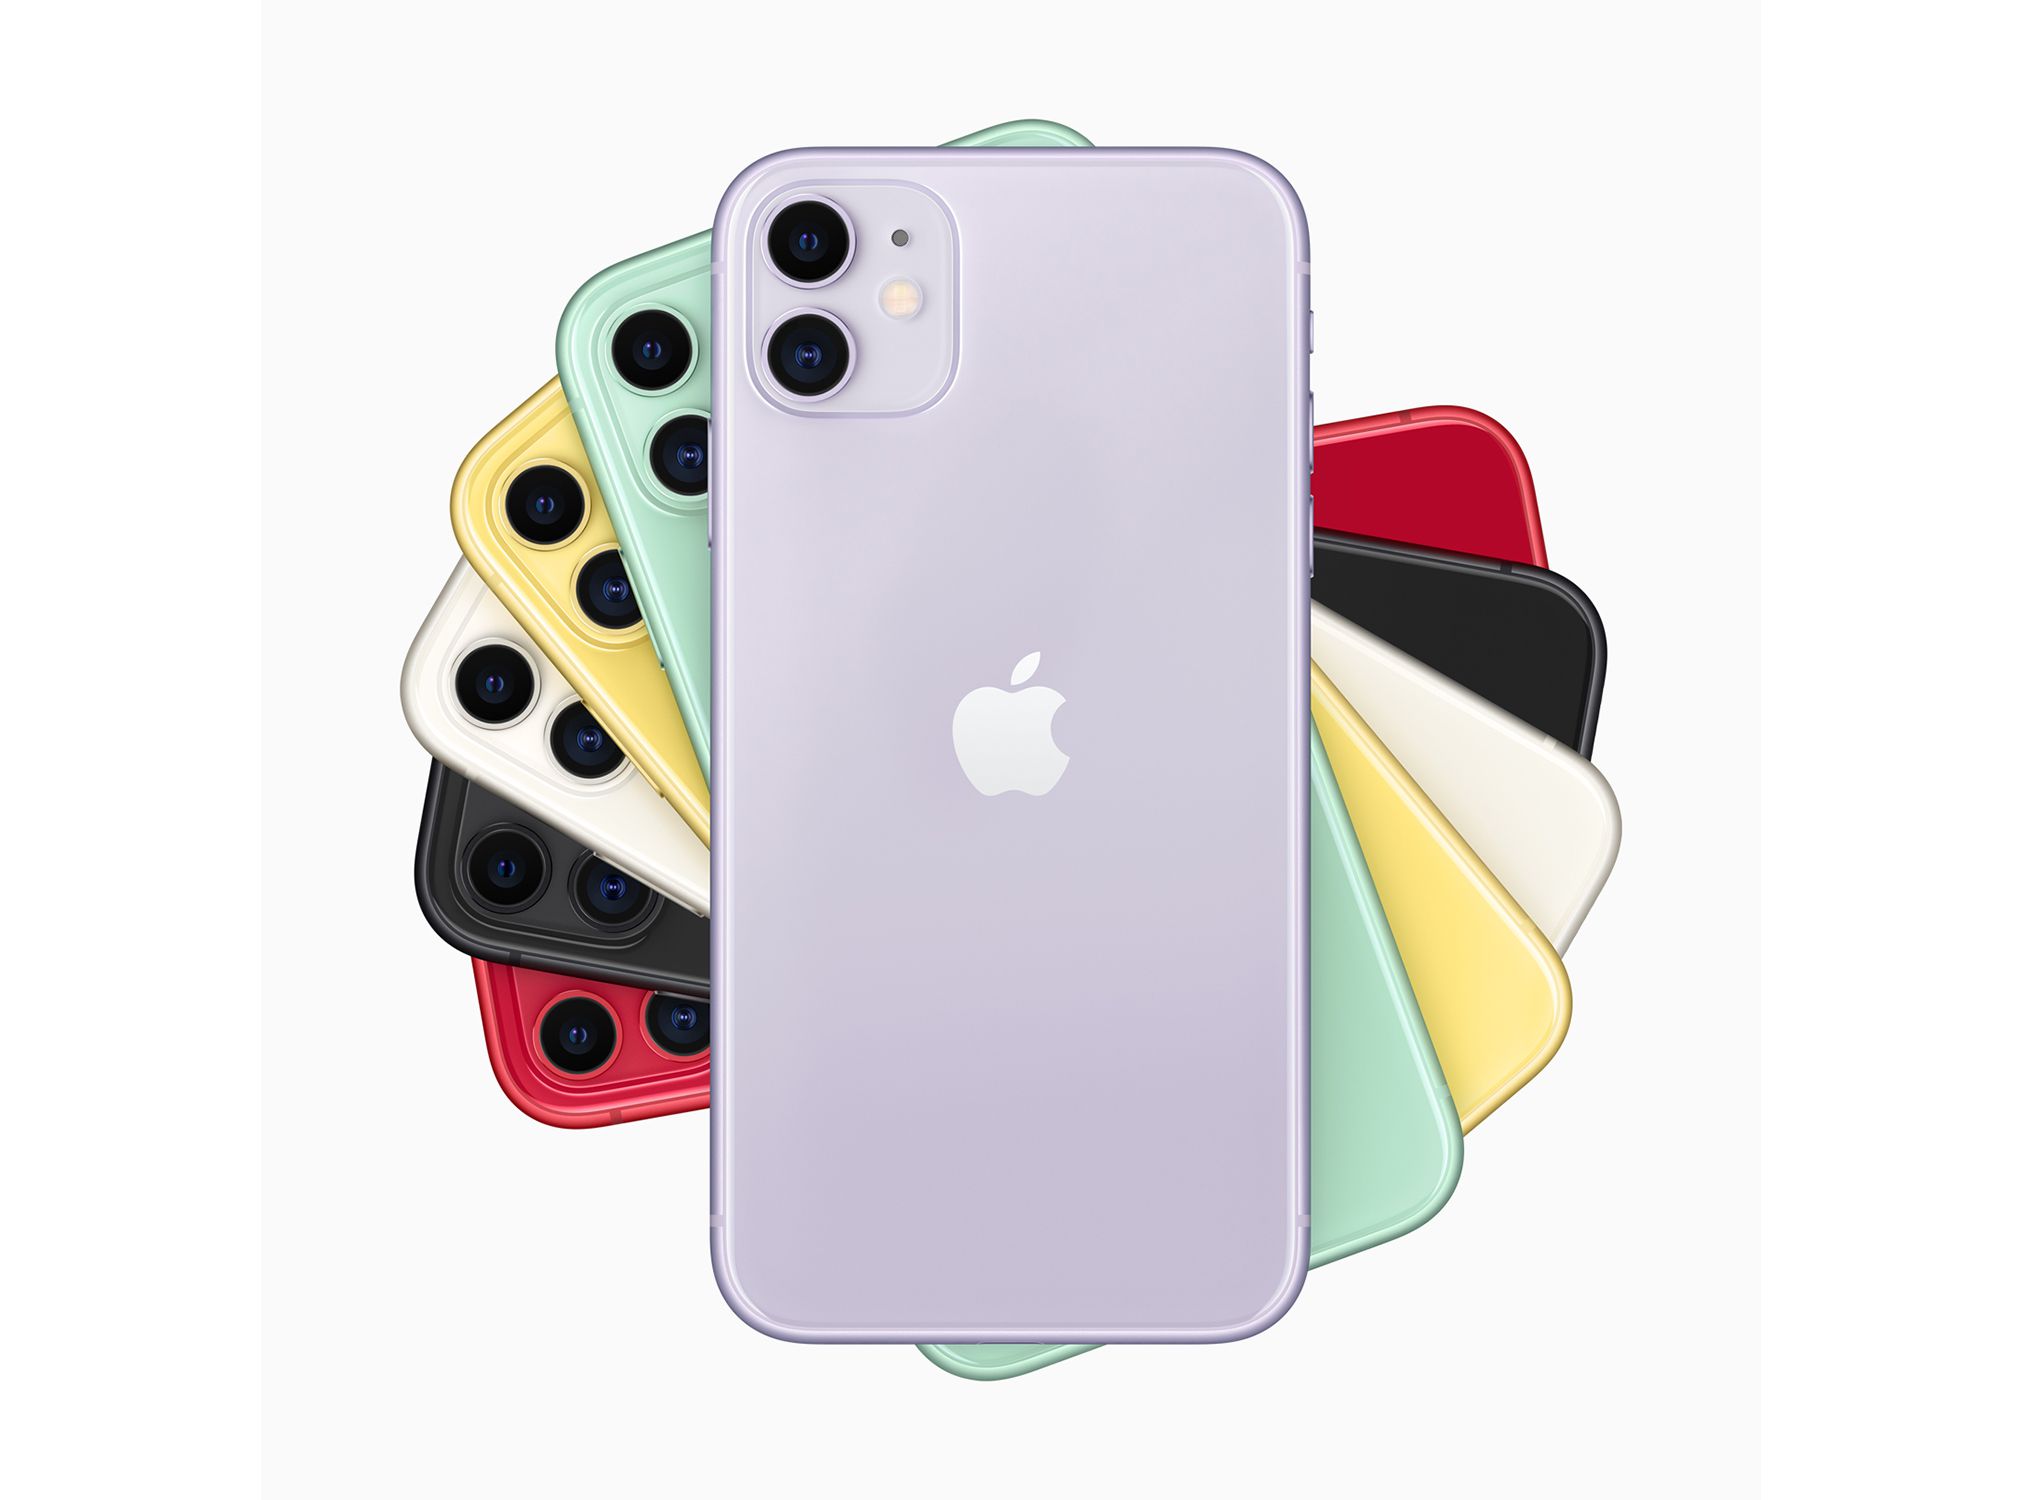 Šest barev iPhonu 11